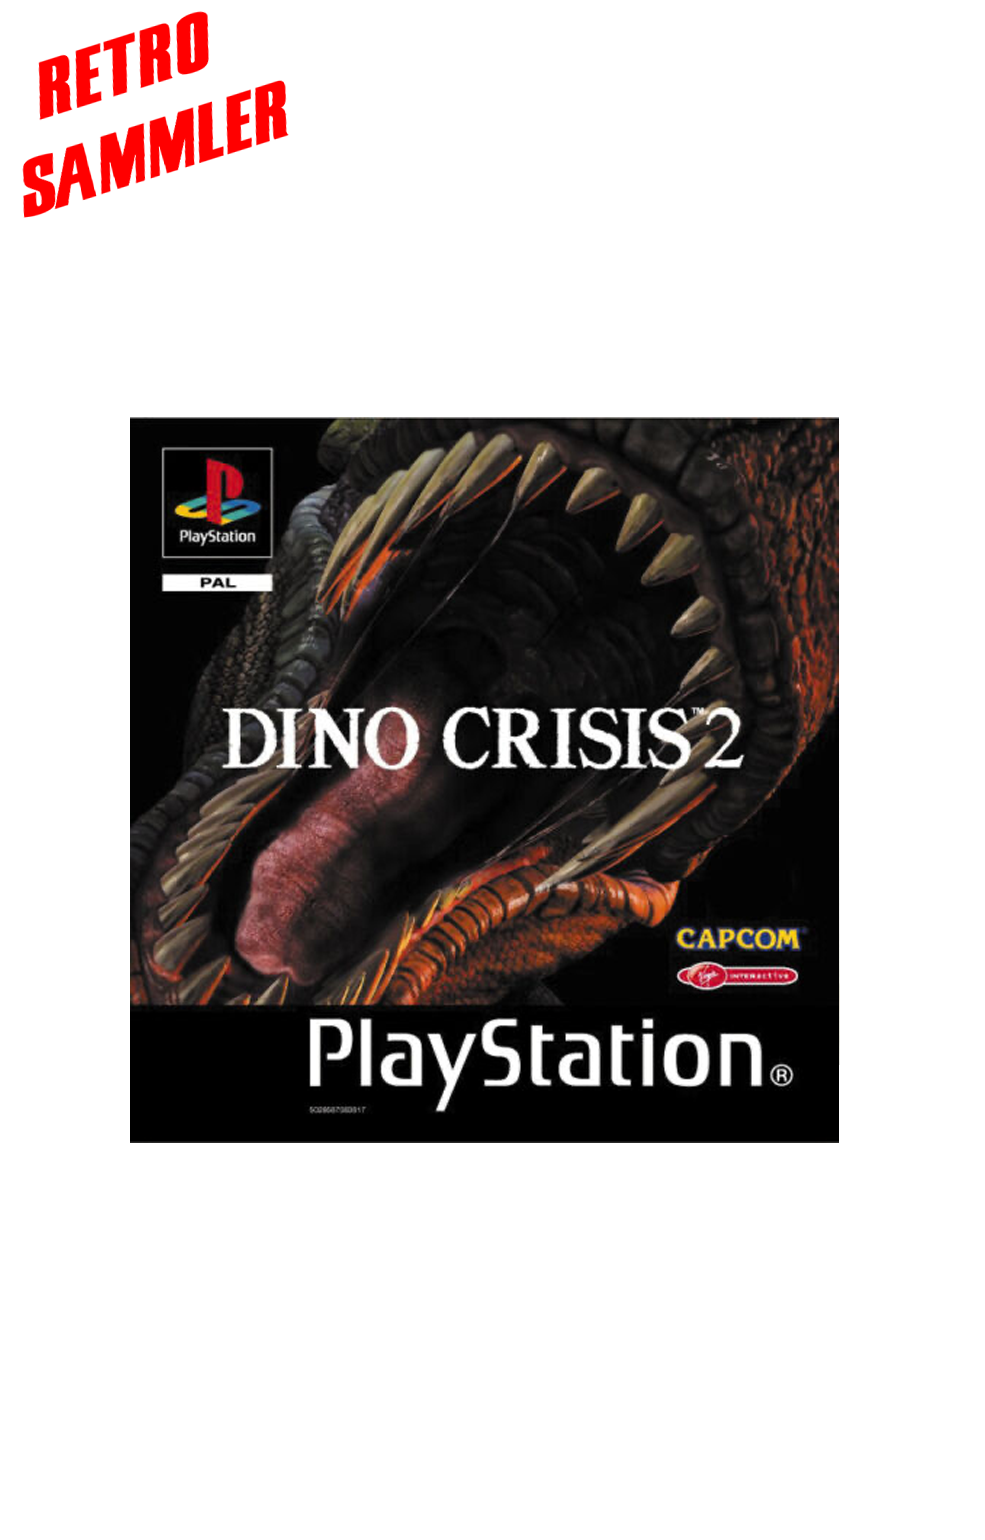 Dino Crisis 2 DE - PS1 - Ohne Anleitung - Retrosammler